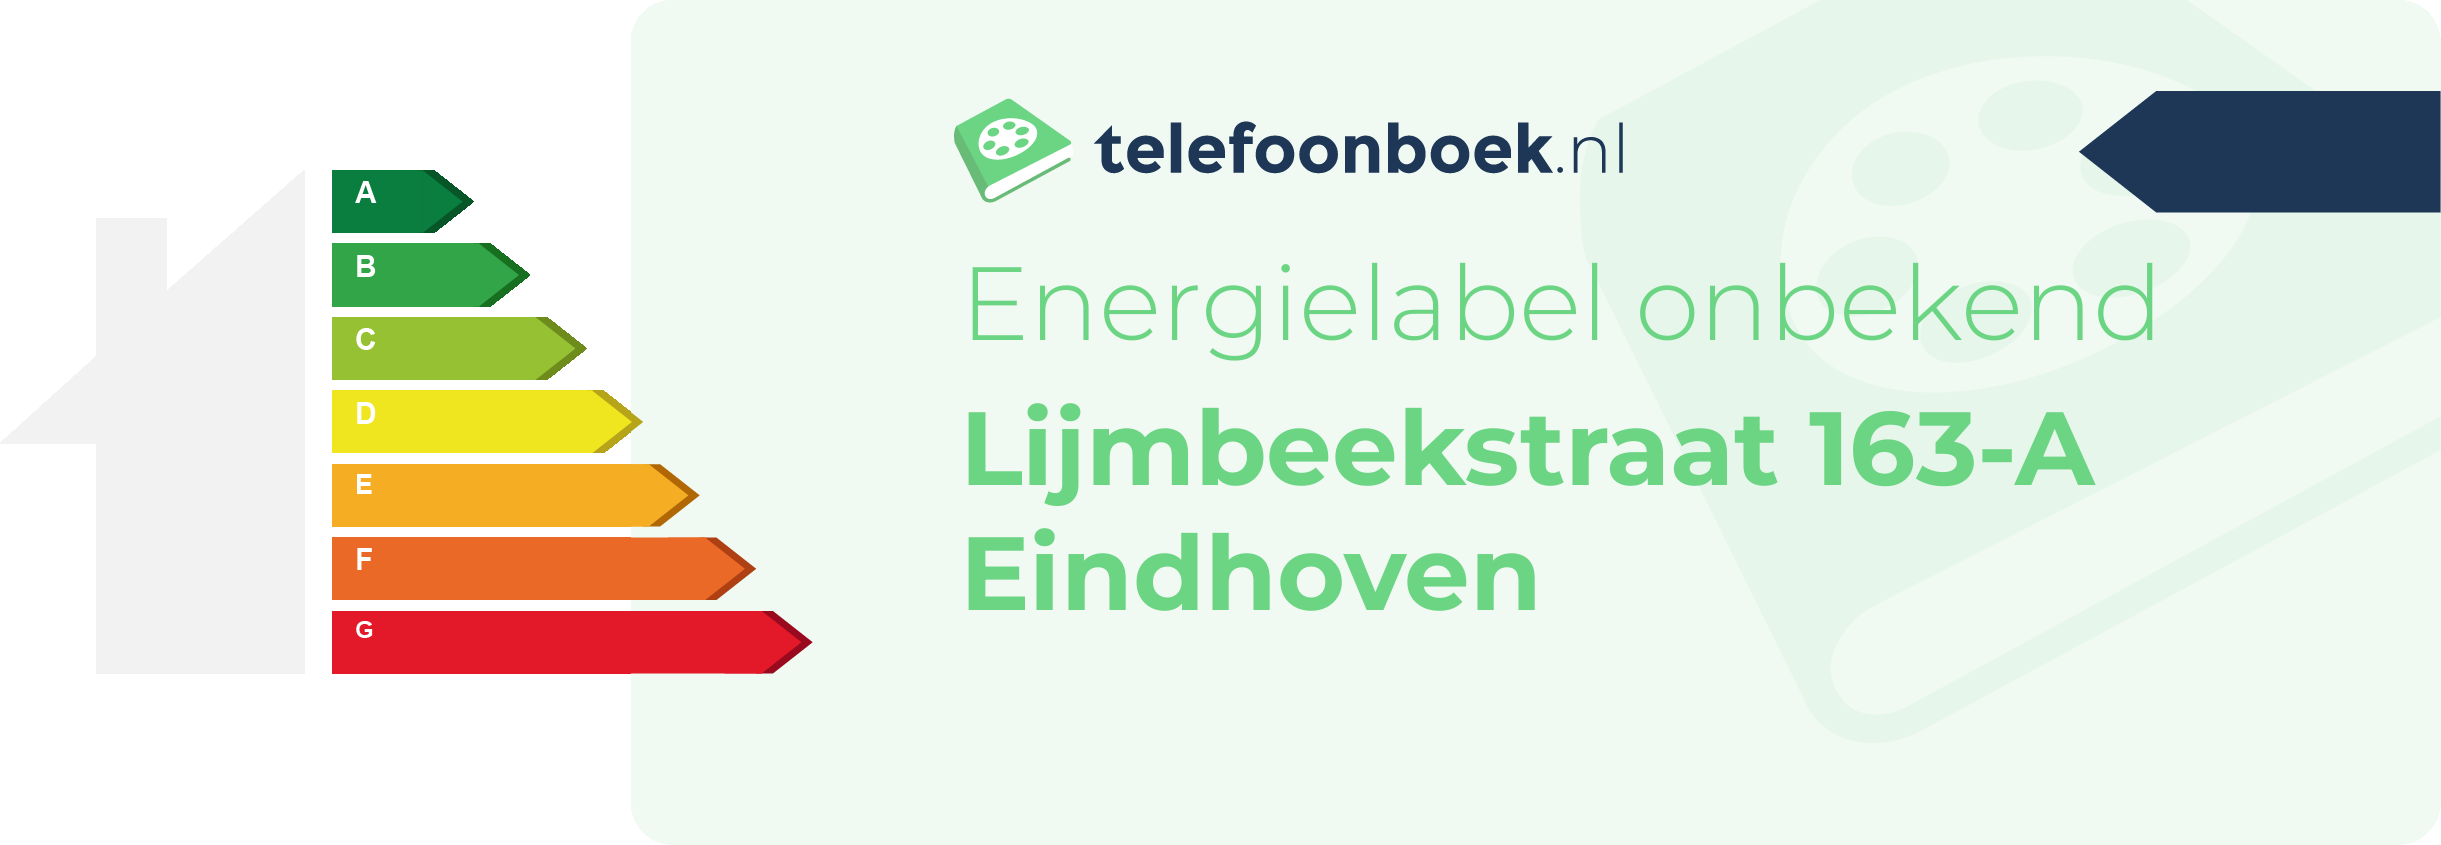 Energielabel Lijmbeekstraat 163-A Eindhoven